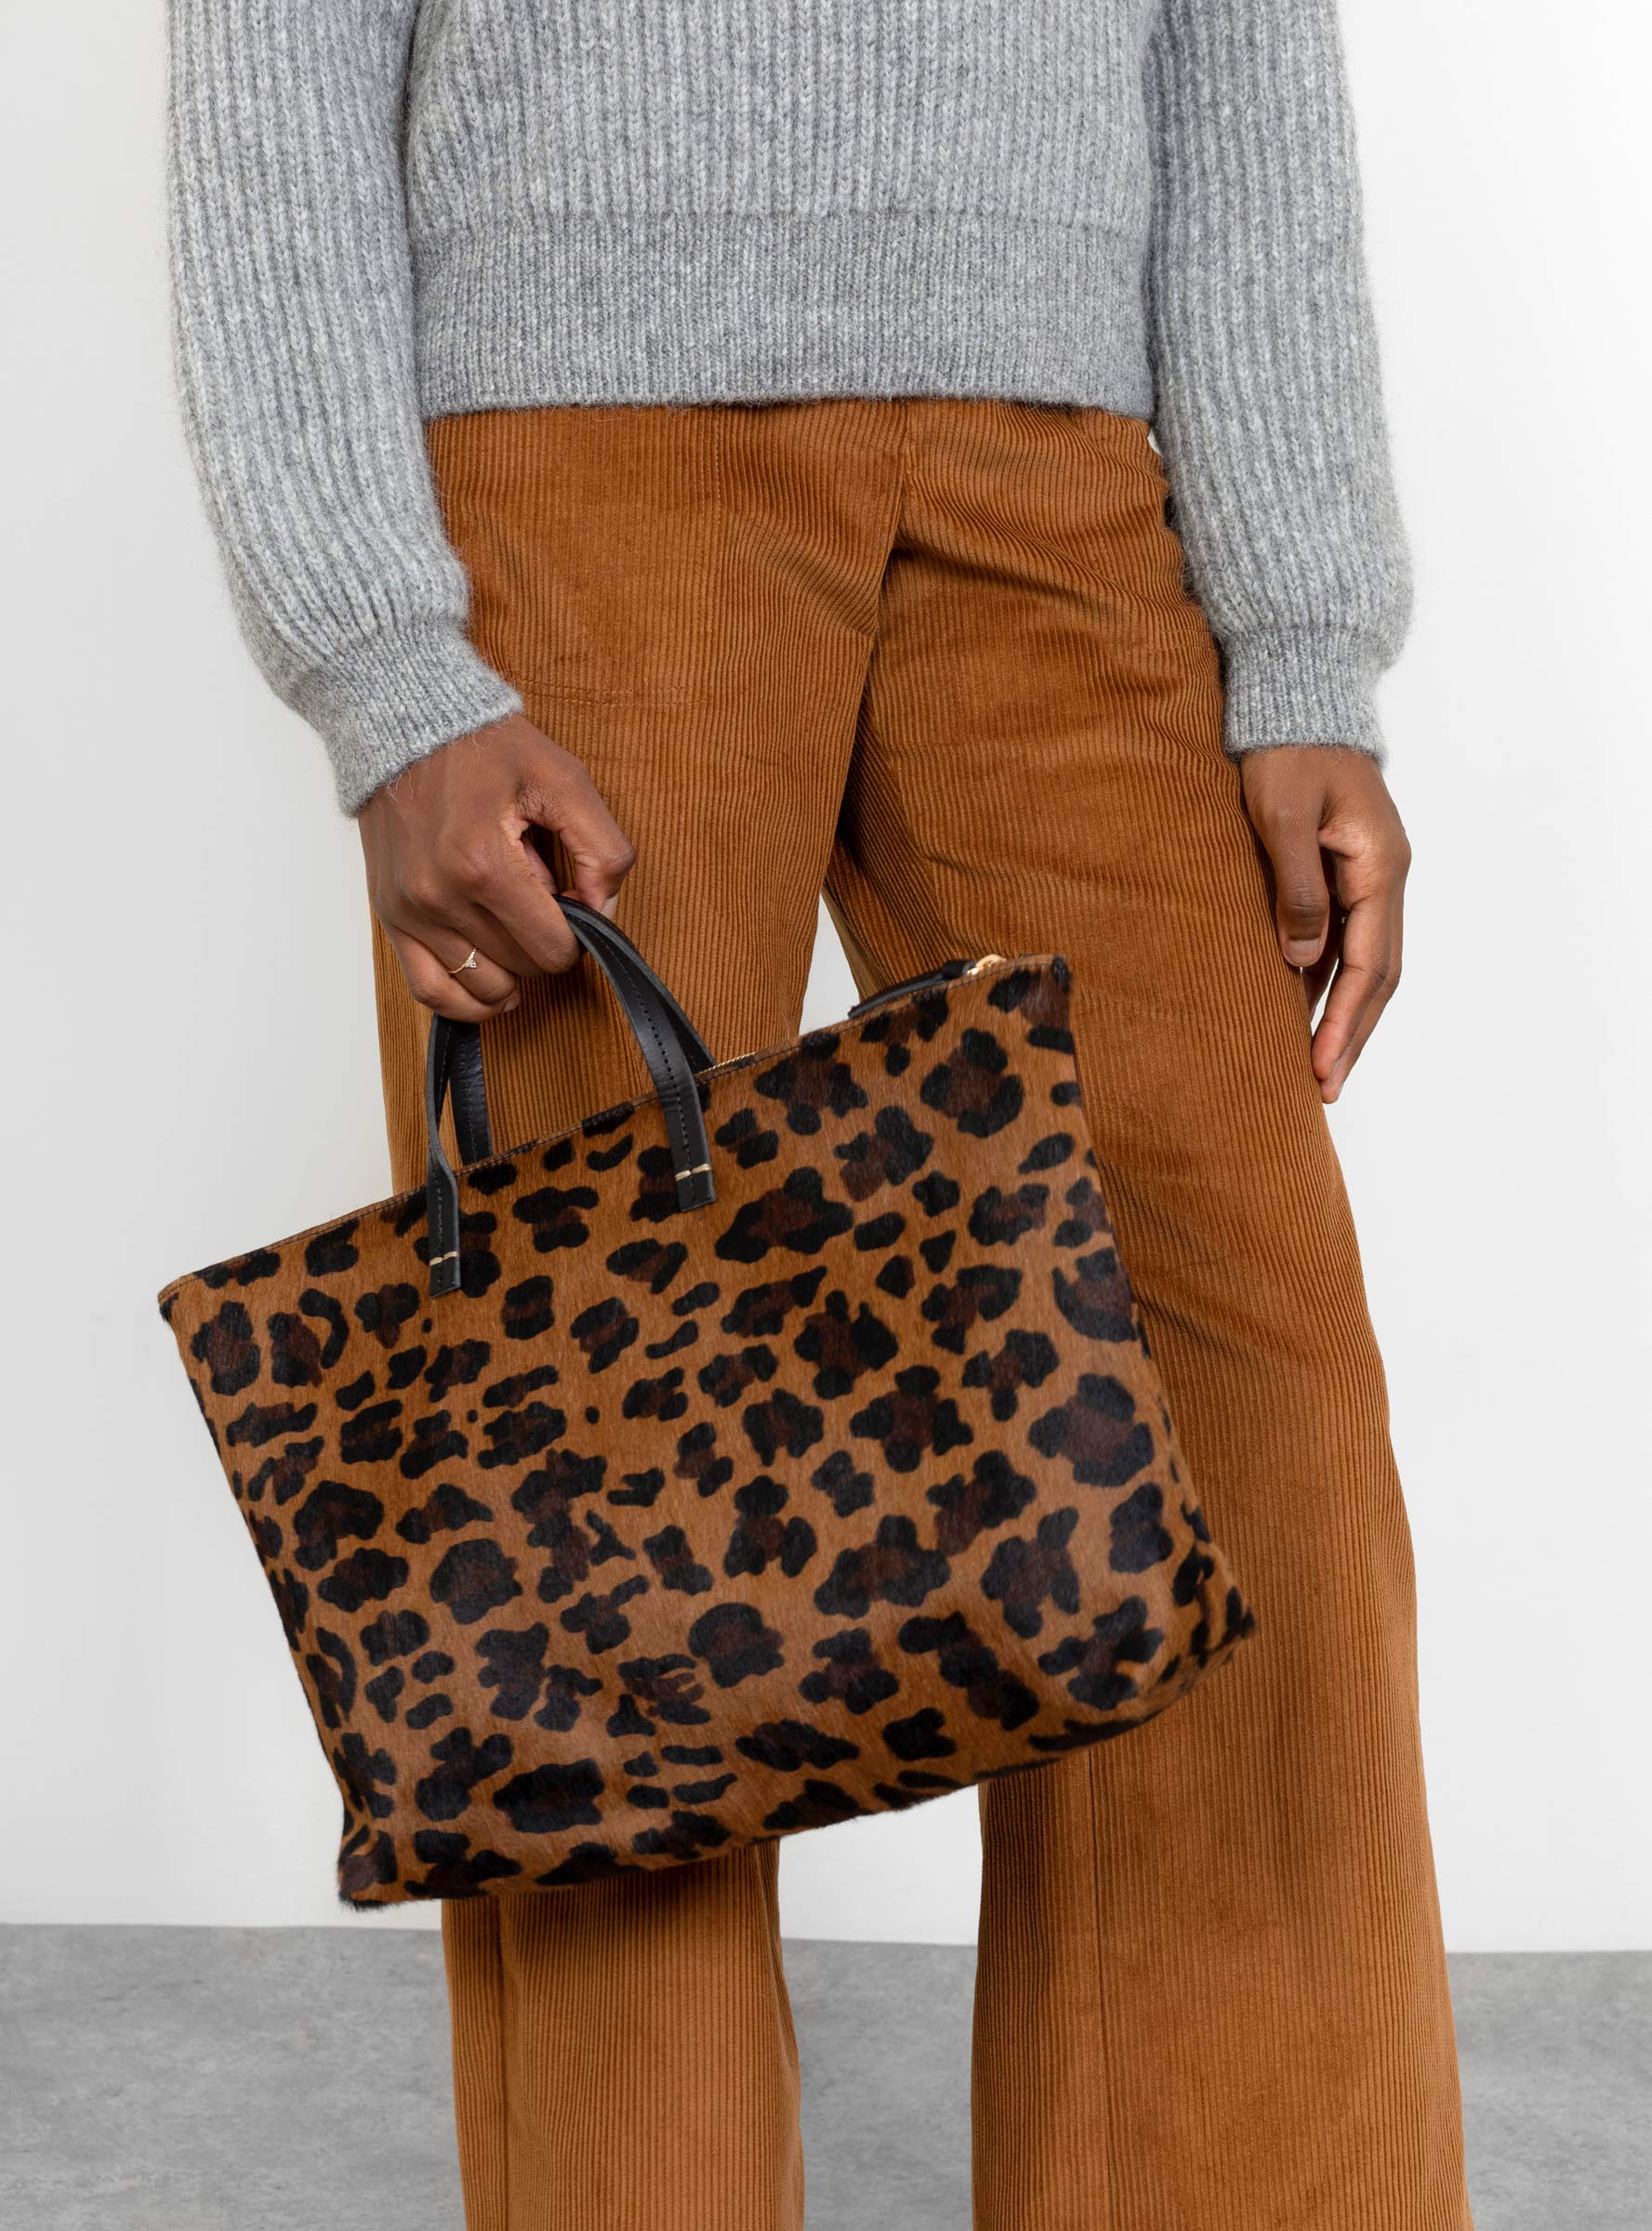 clare v leopard bag